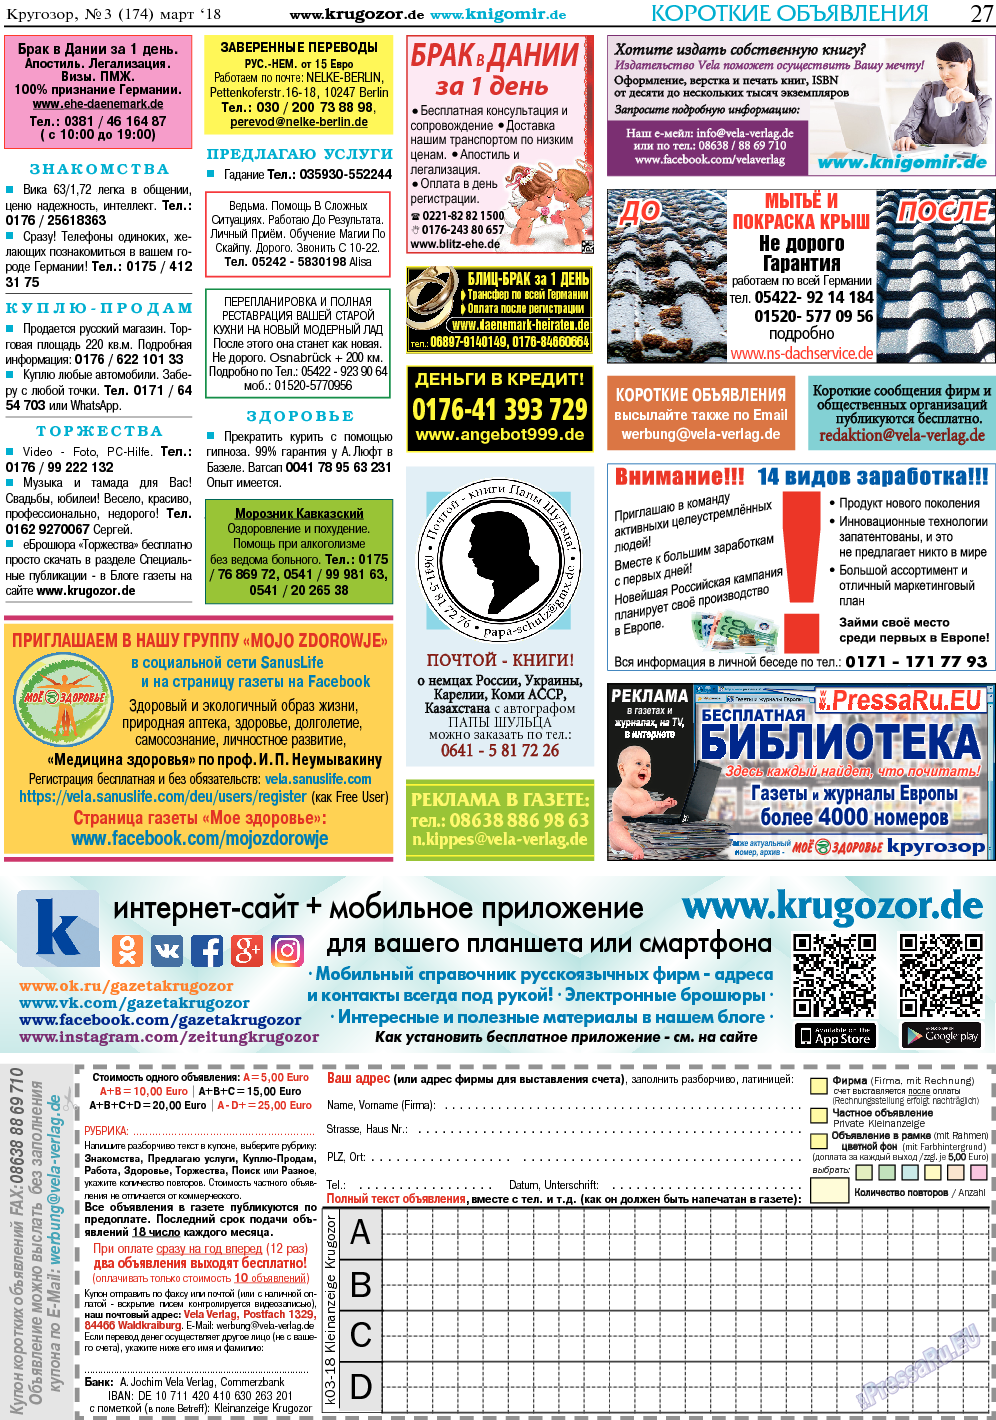 Кругозор, газета. 2018 №3 стр.27